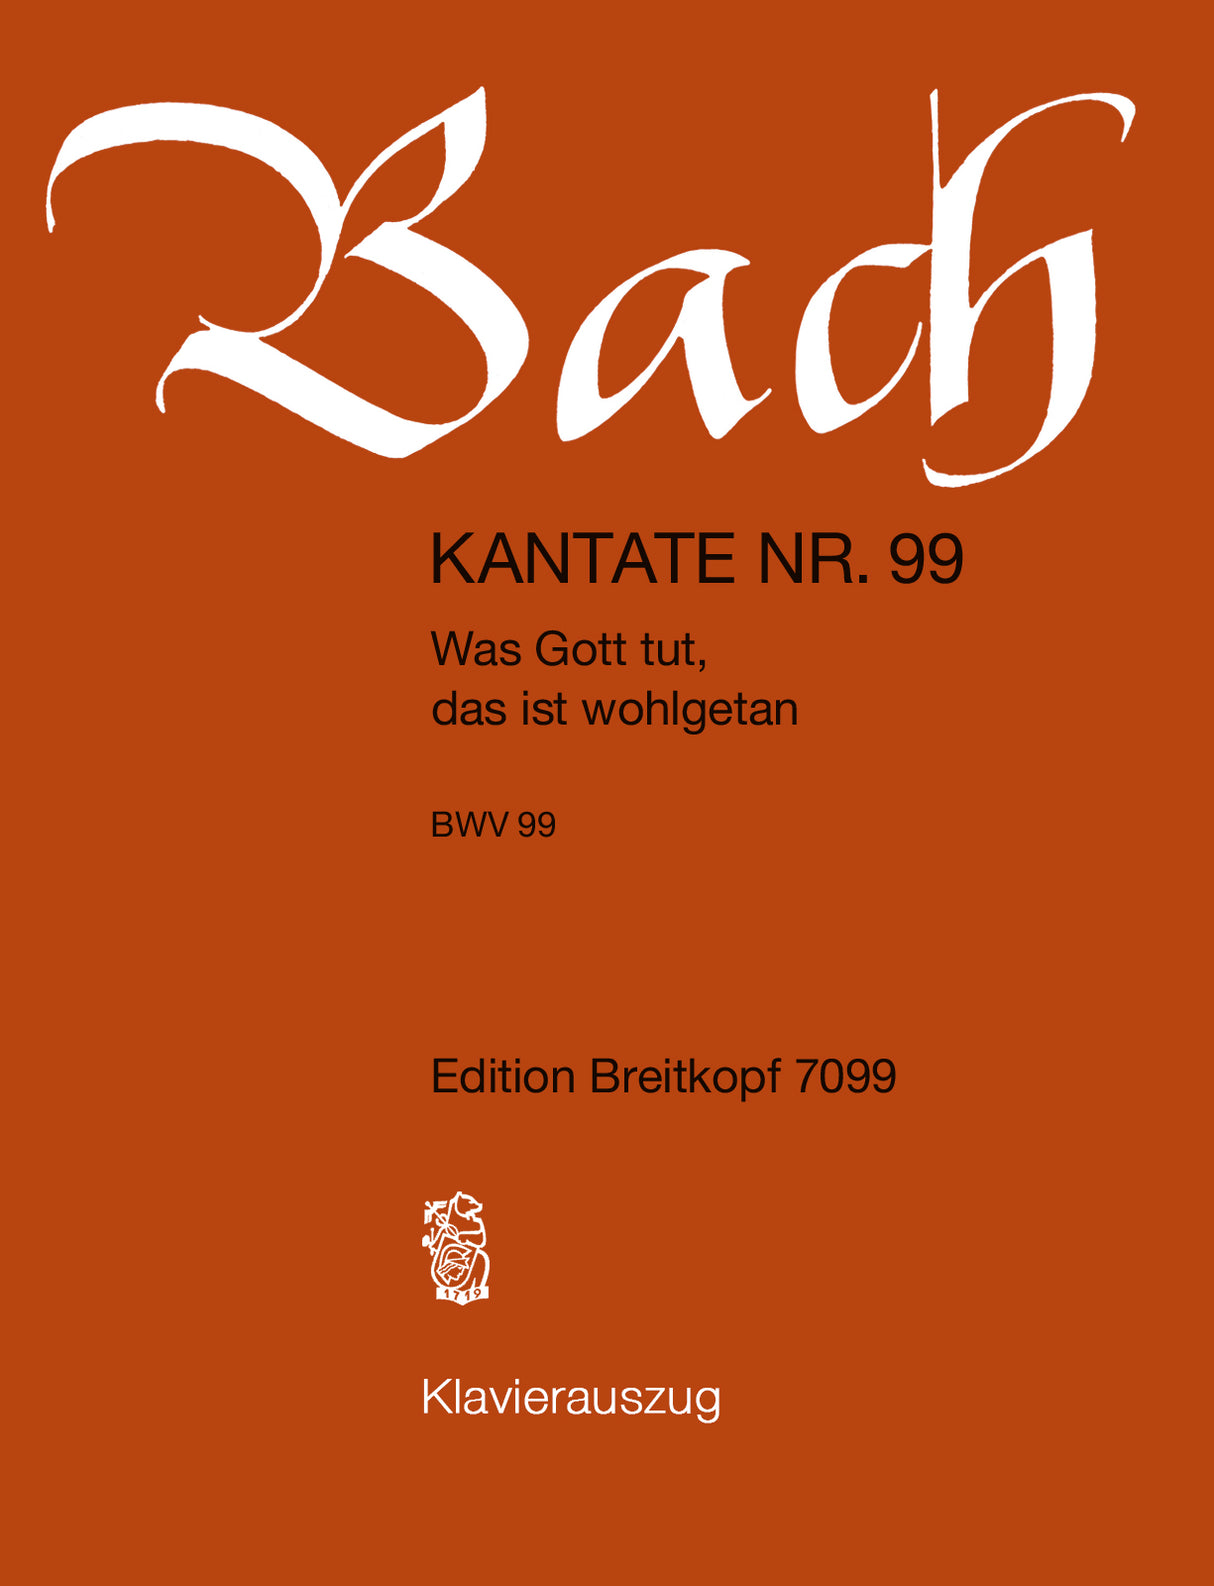 Bach: Was Gott tut, das ist wohlgetan, BWV 99